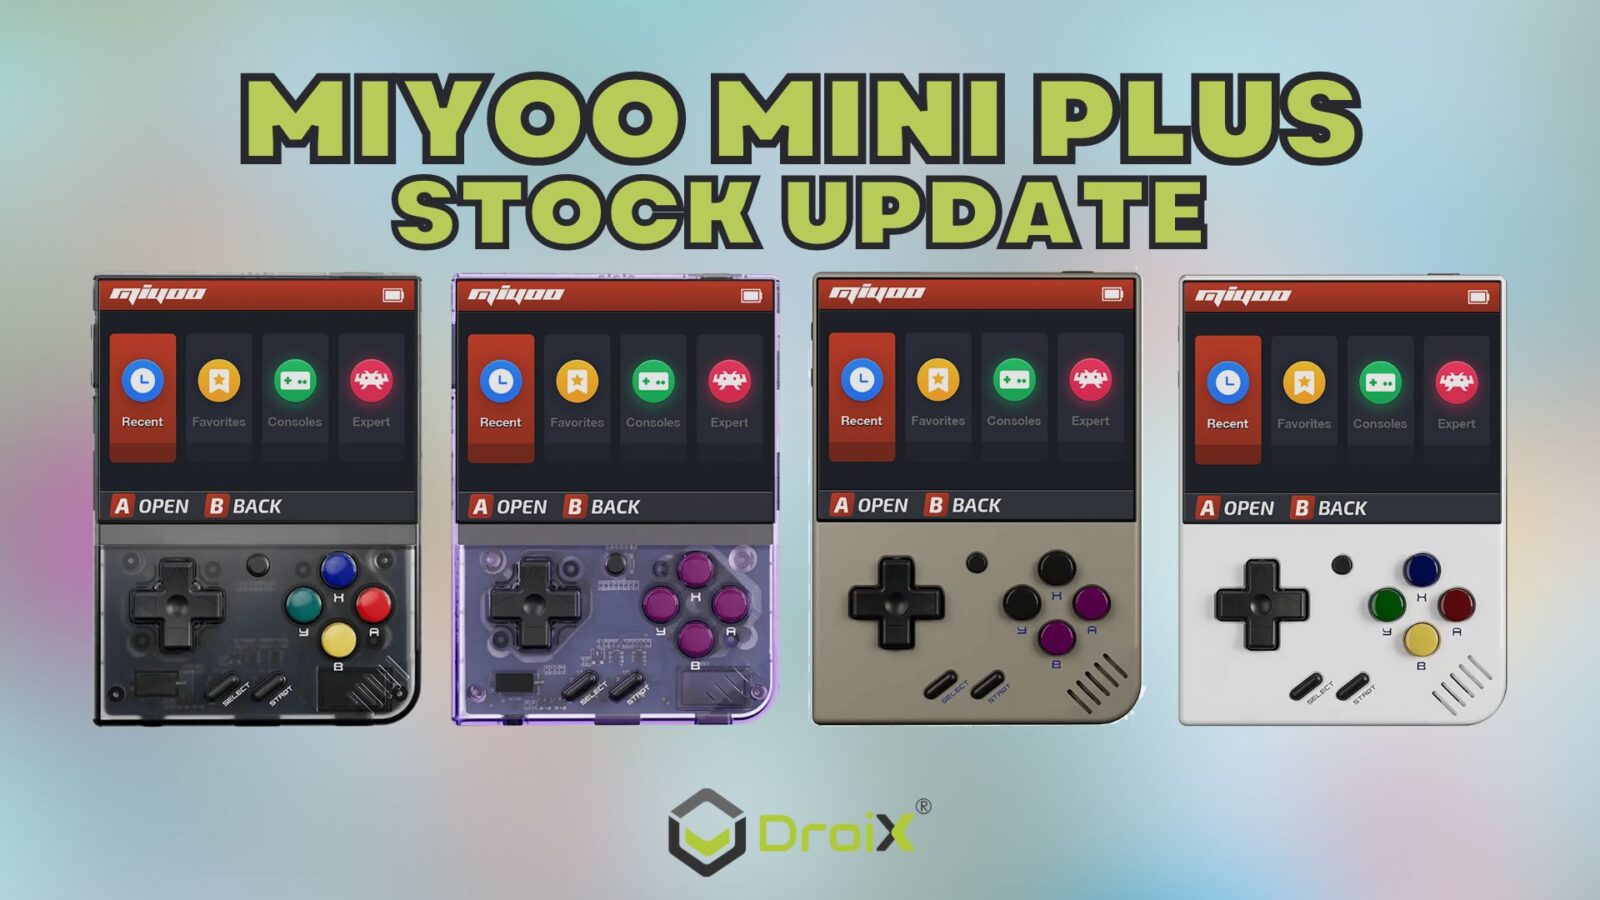 Miyoo Mini Plus Stock update